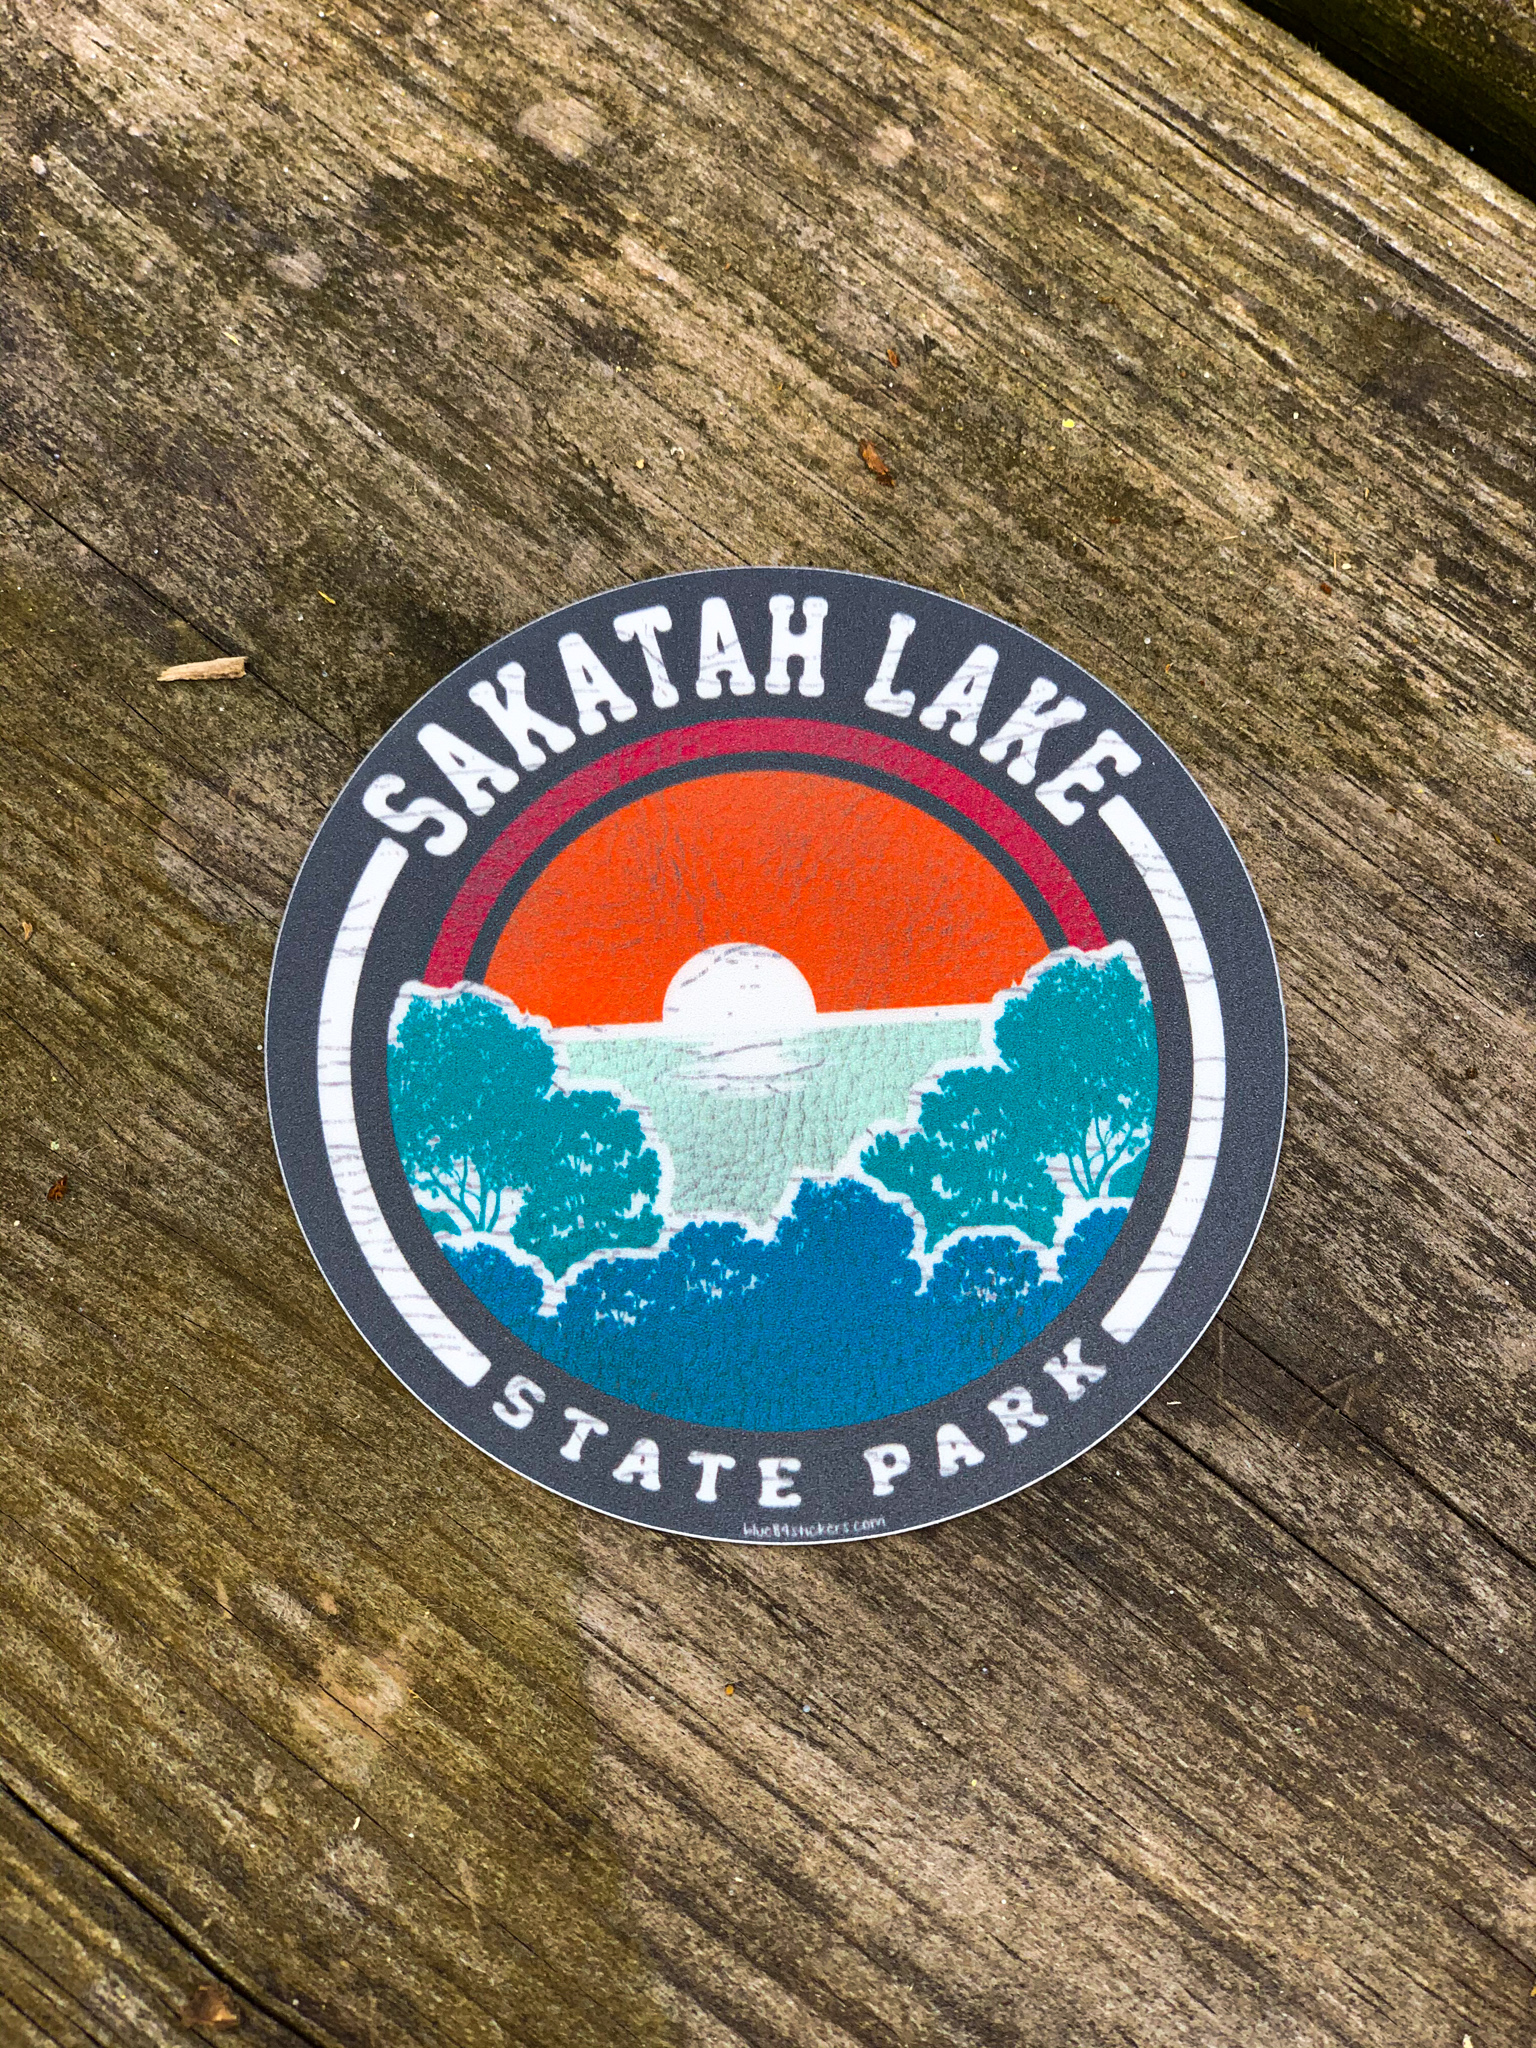 Sakatah Lake State Park Sticker